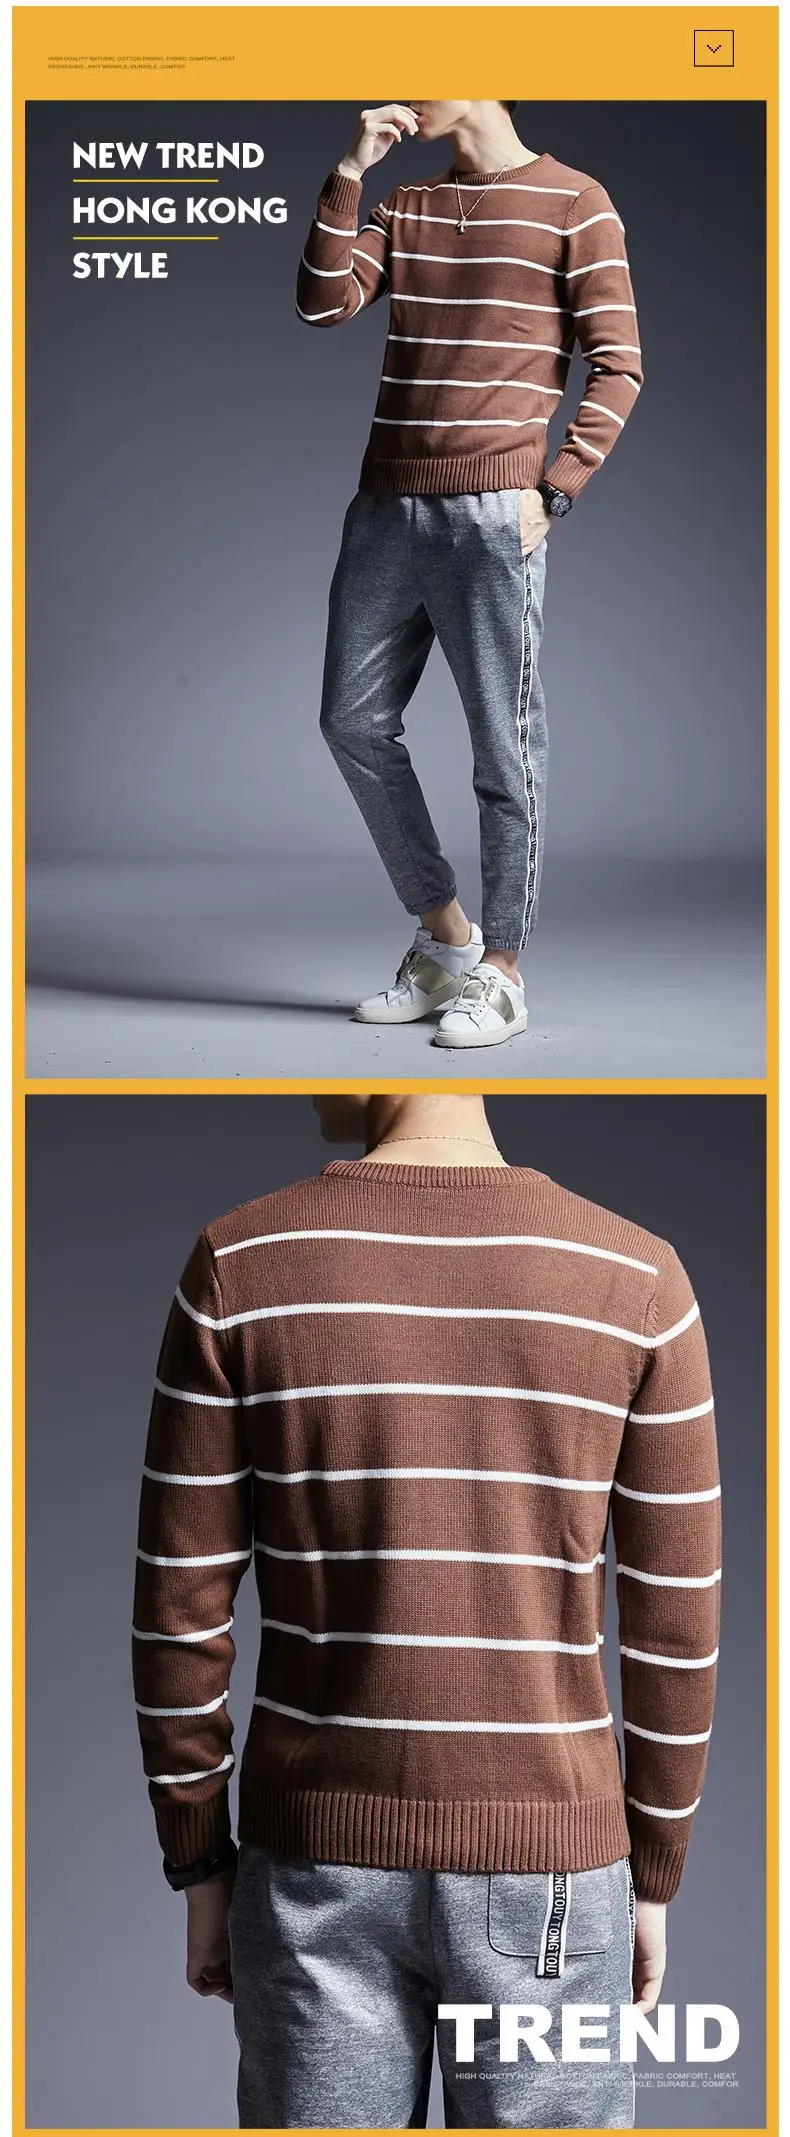 2019 новый модный бренд свитер мужские свитера мужской пуловер вязаные Джемперы О-образным вырезом Осень корейский стиль Повседневная